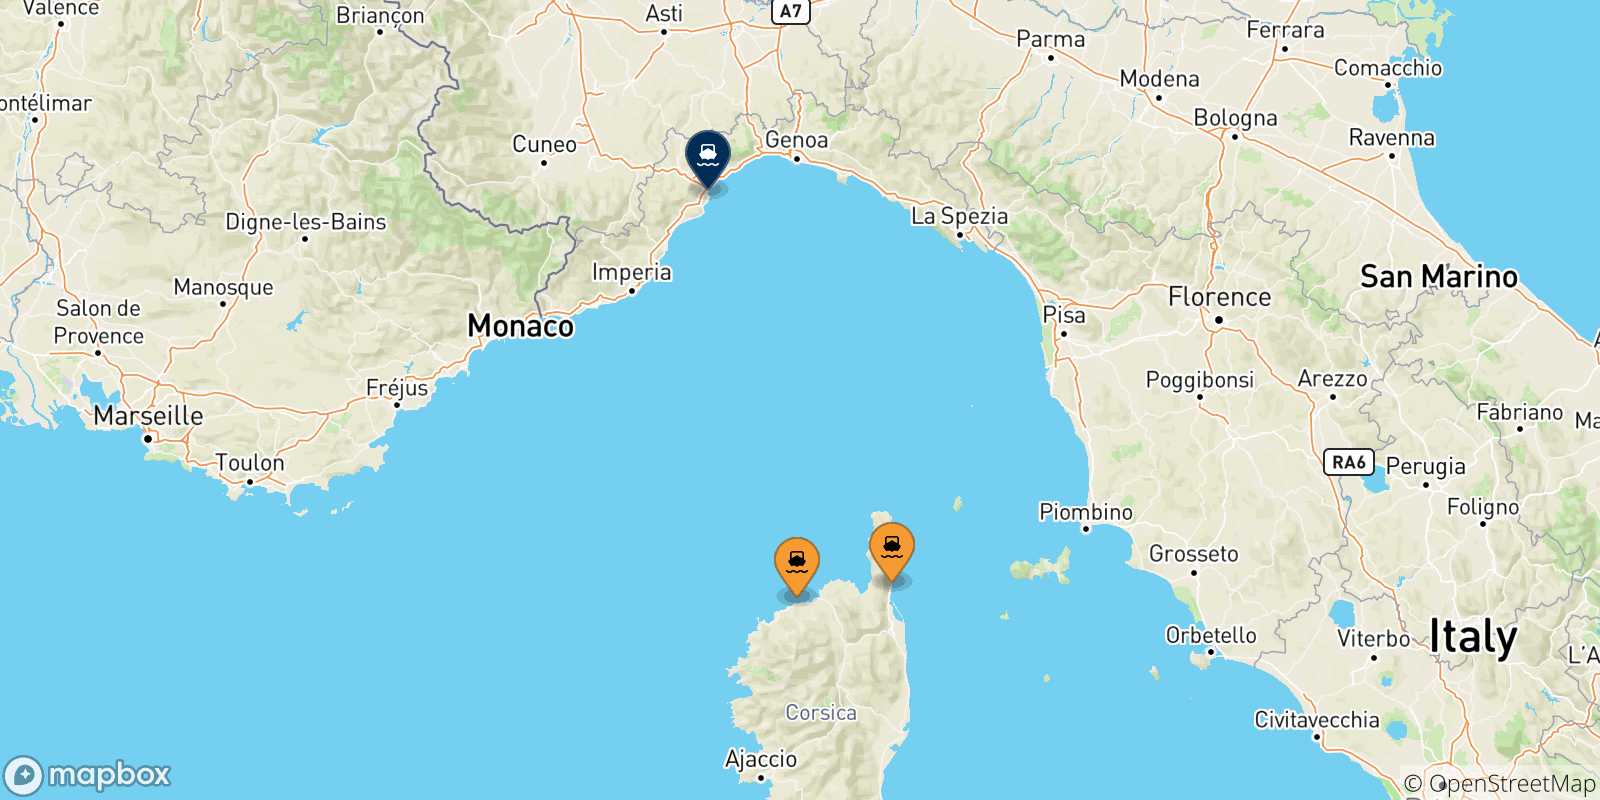 Mappa delle possibili rotte tra la Corsica e Savona